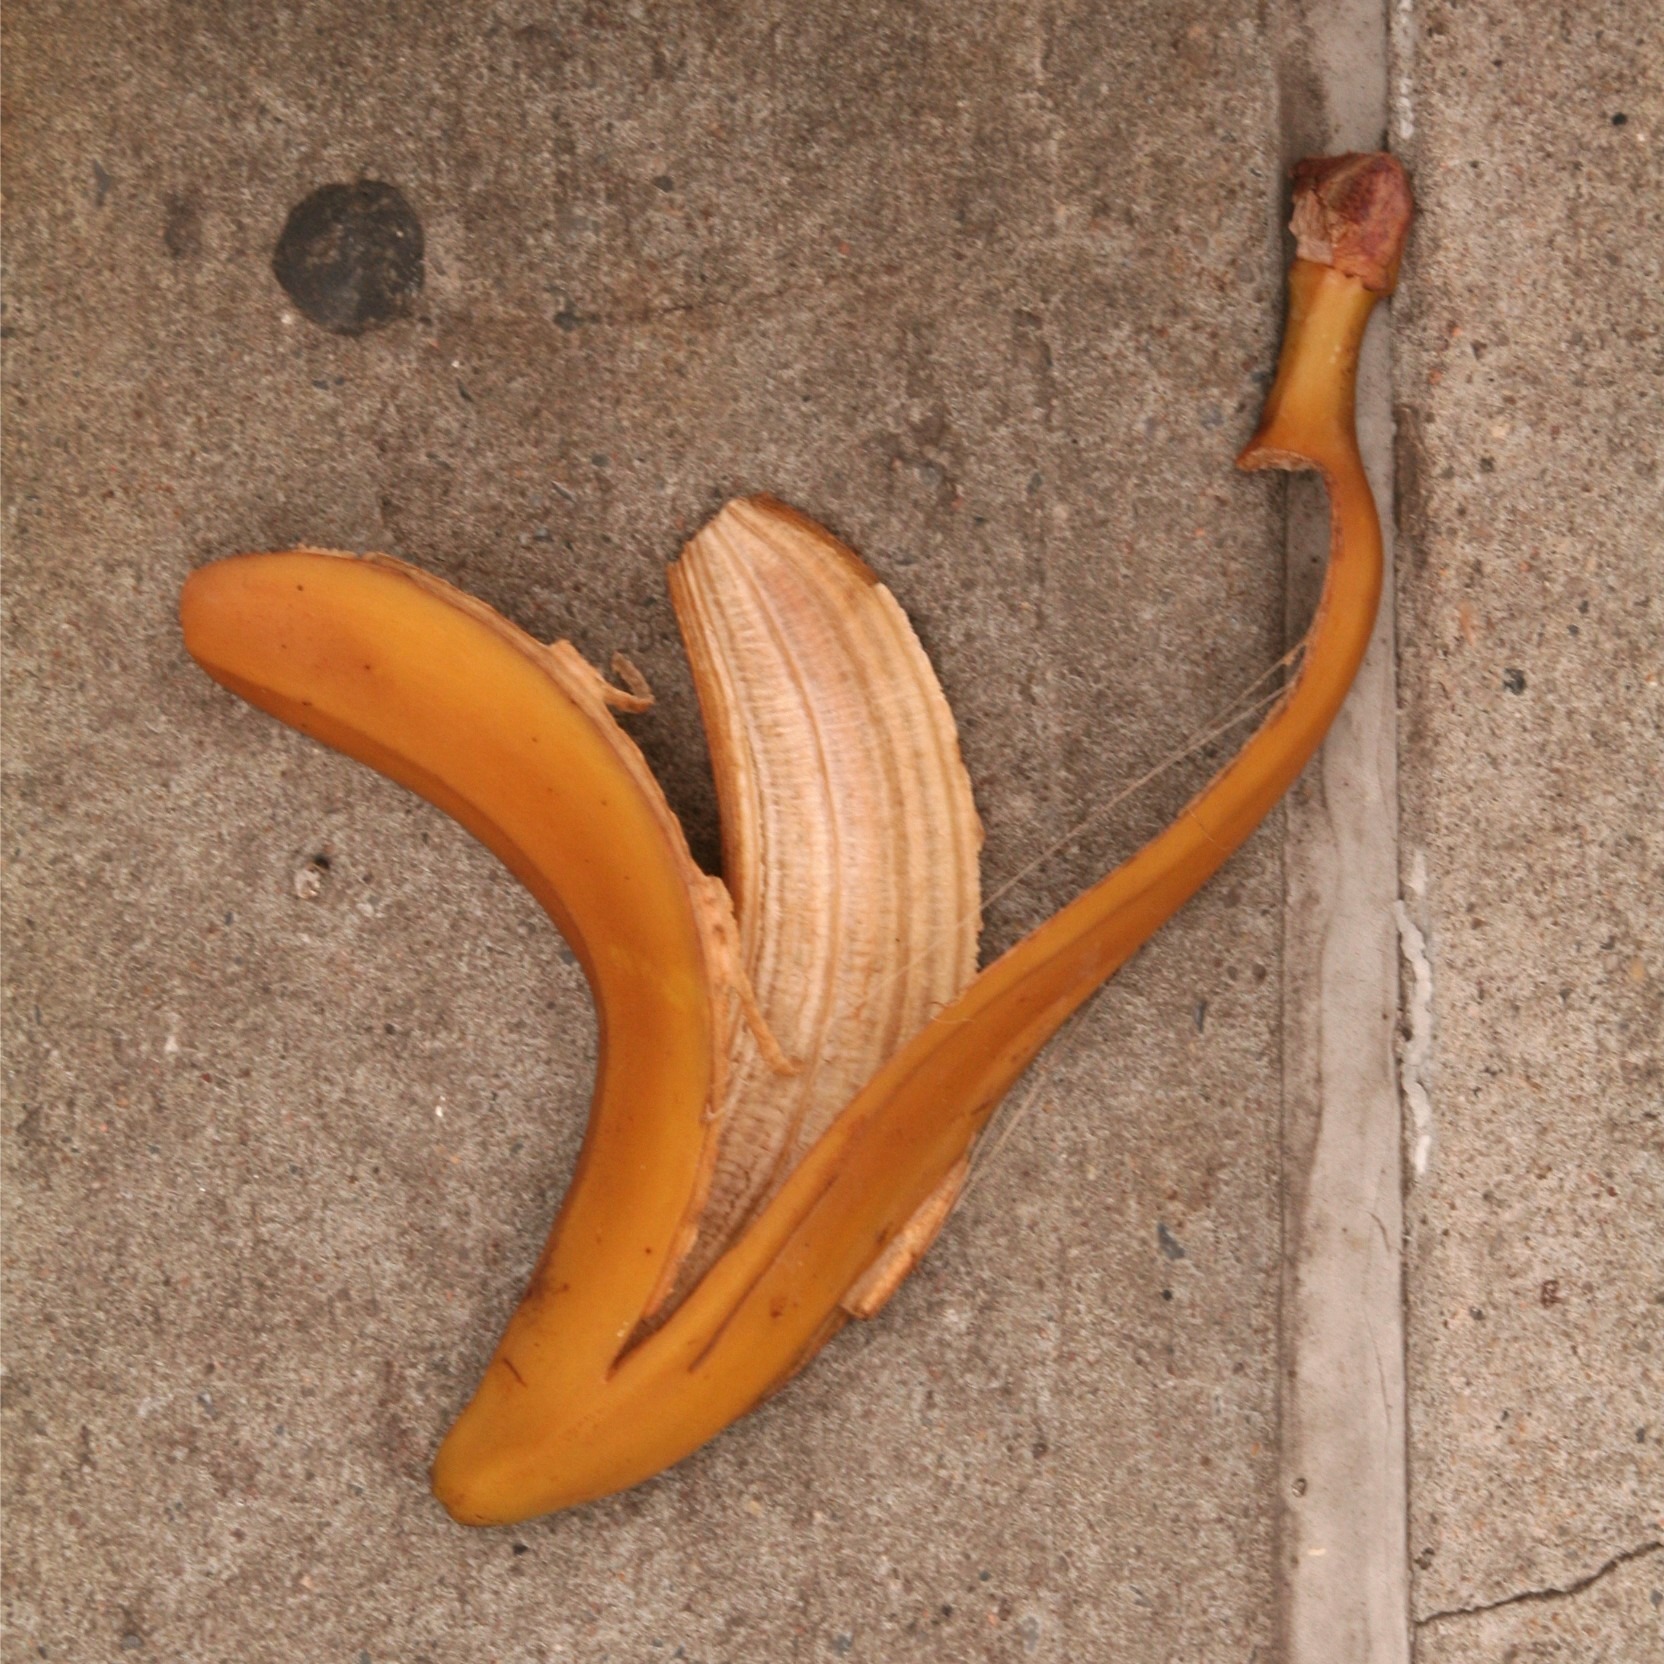 Ел кожуру бананов. Бананы в клумбе. Дерево с листьями в виде банановые шкурки. Кожаный банан. Корни с бананом.